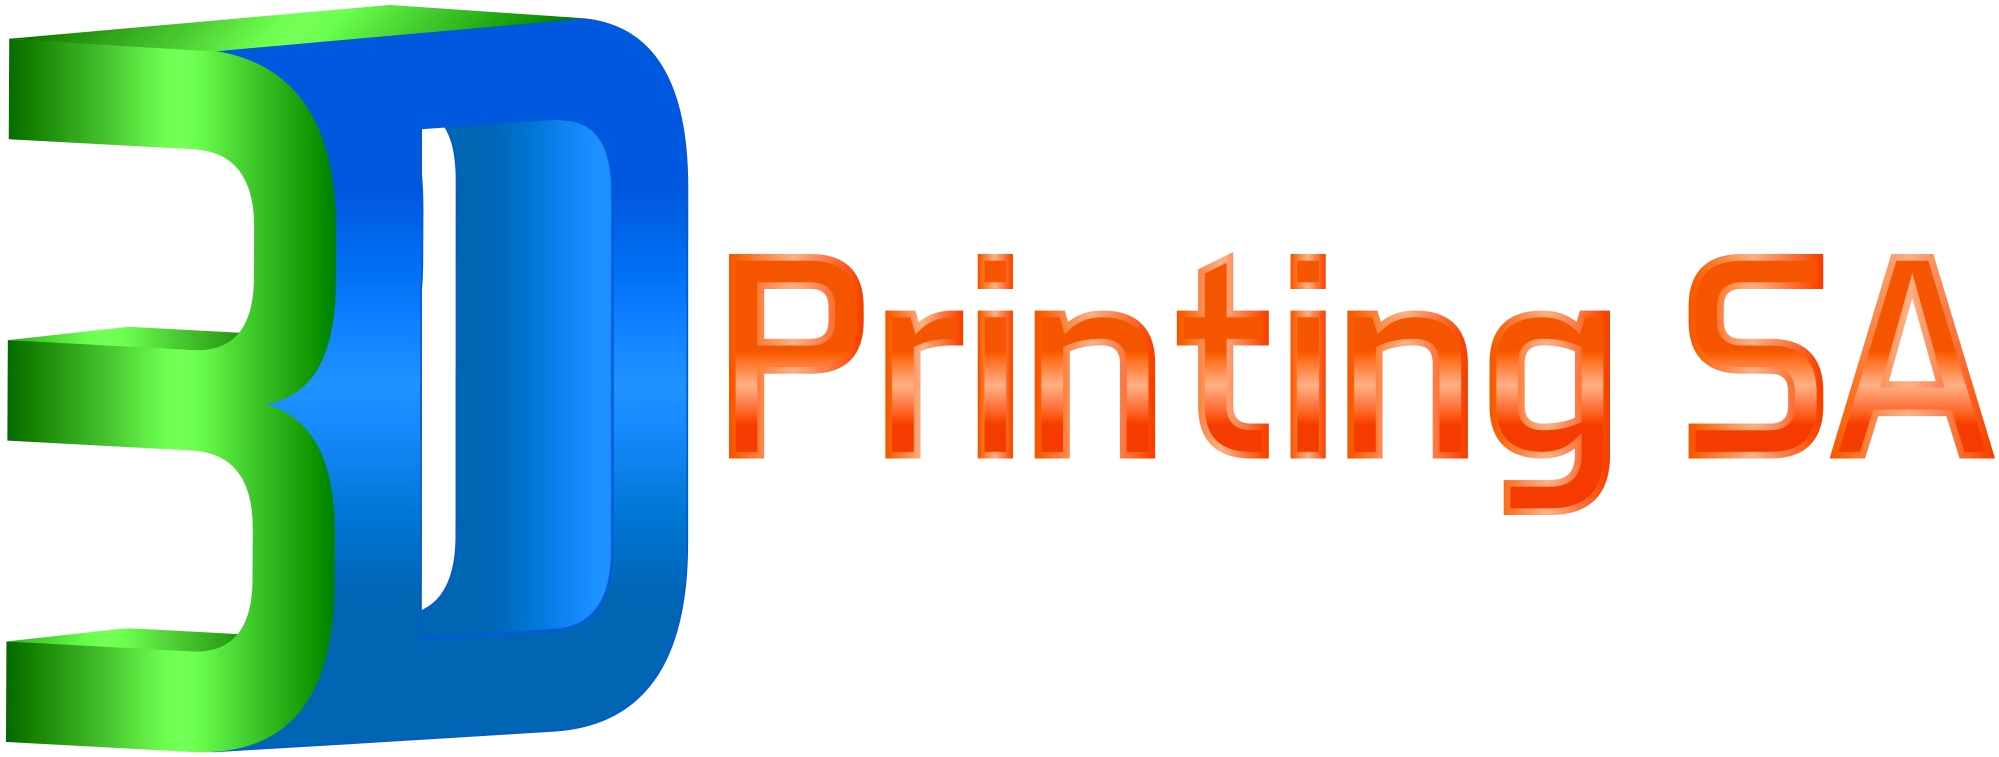 3D Printing SA